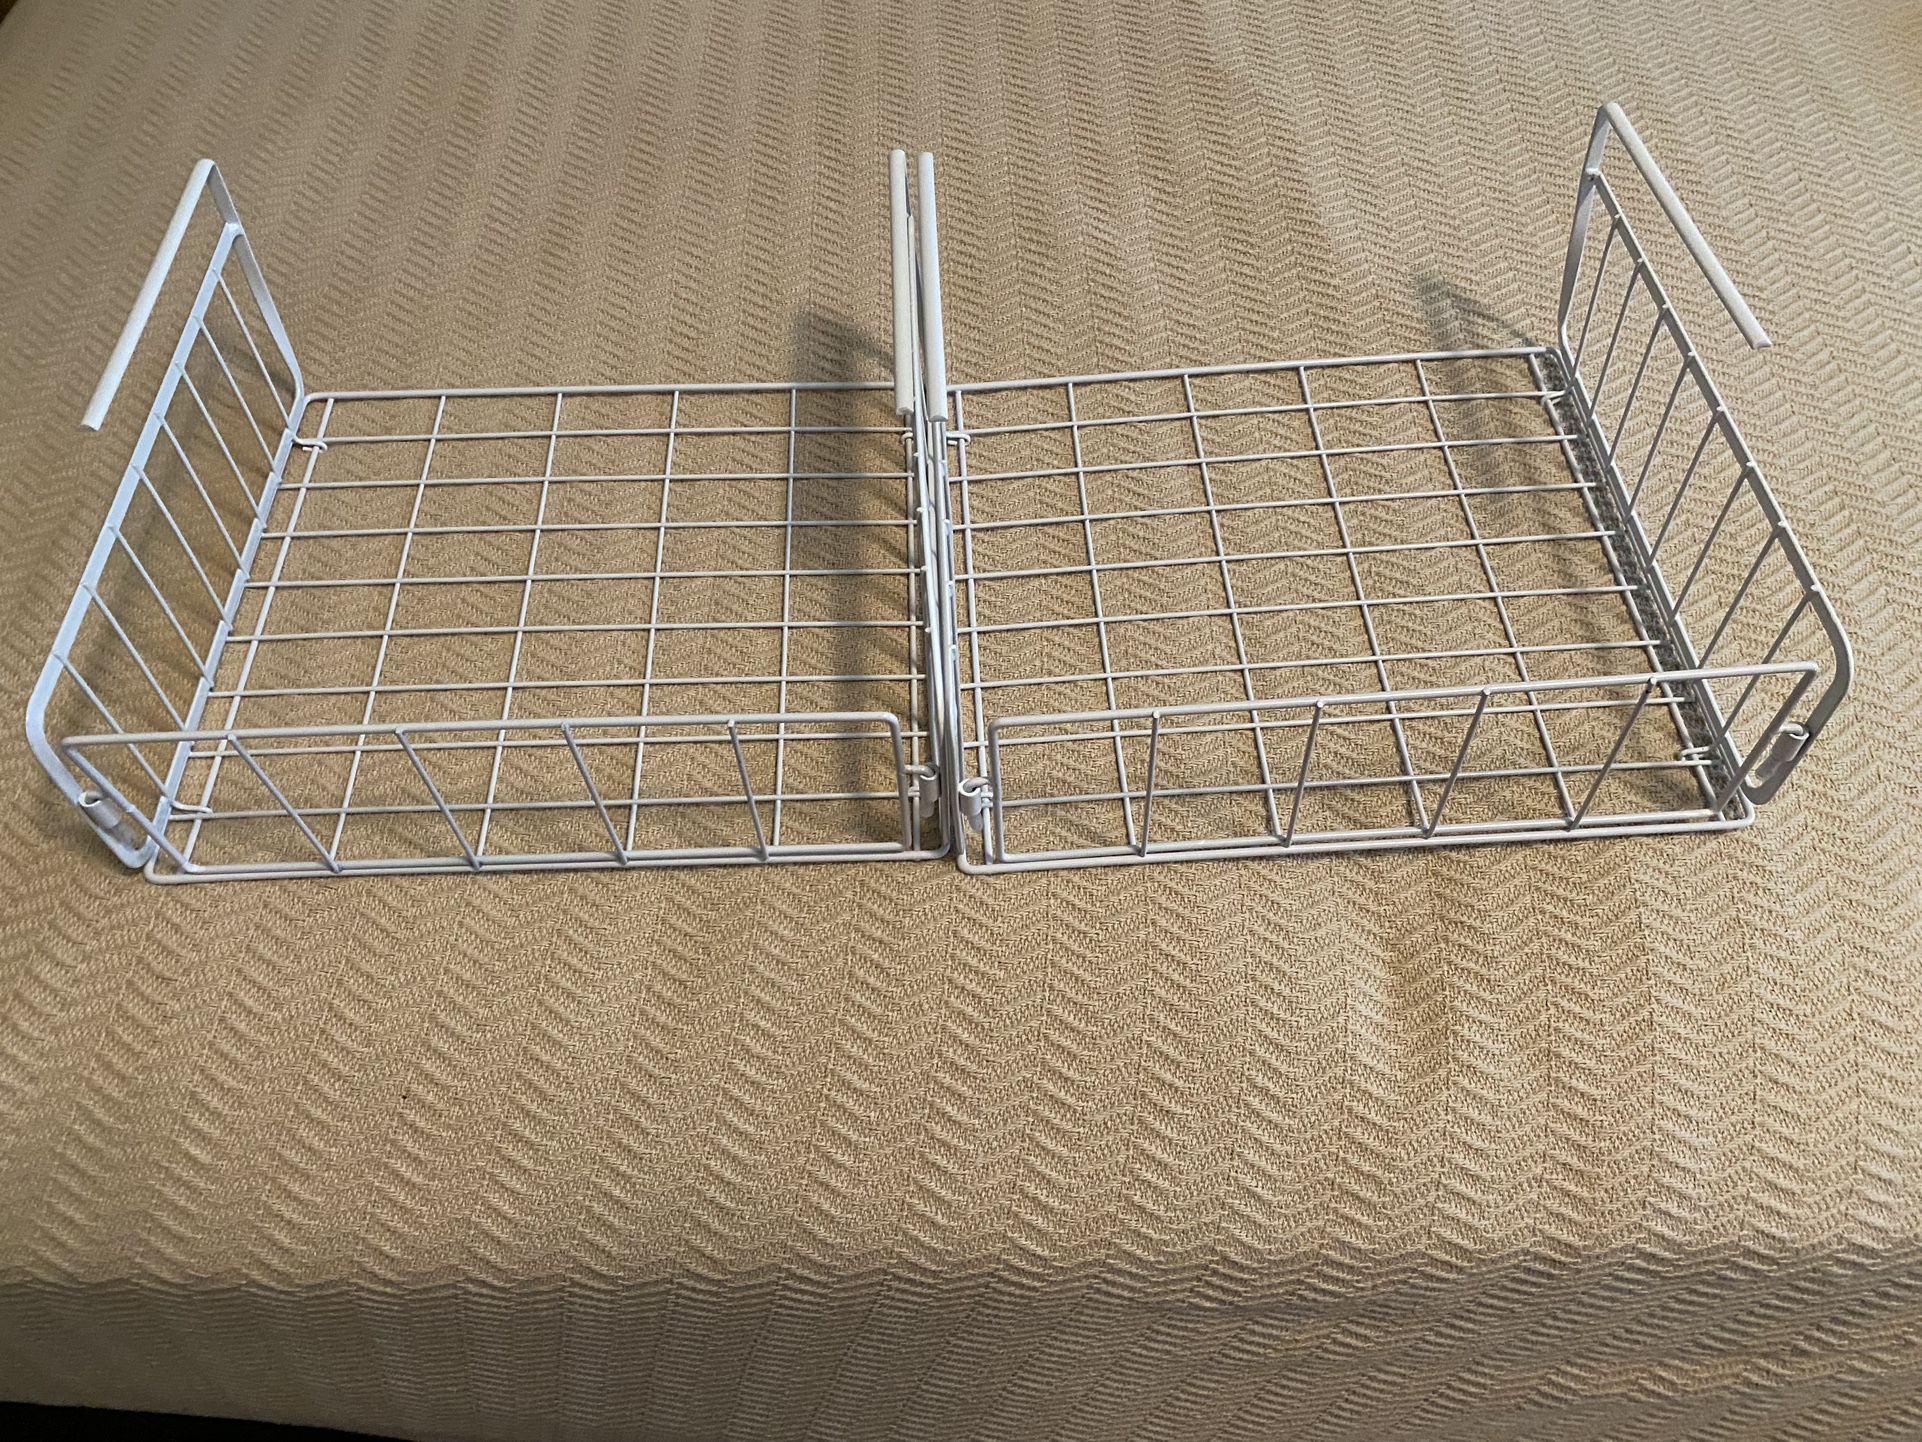 Wire Under Shelf Basket, White  - 2